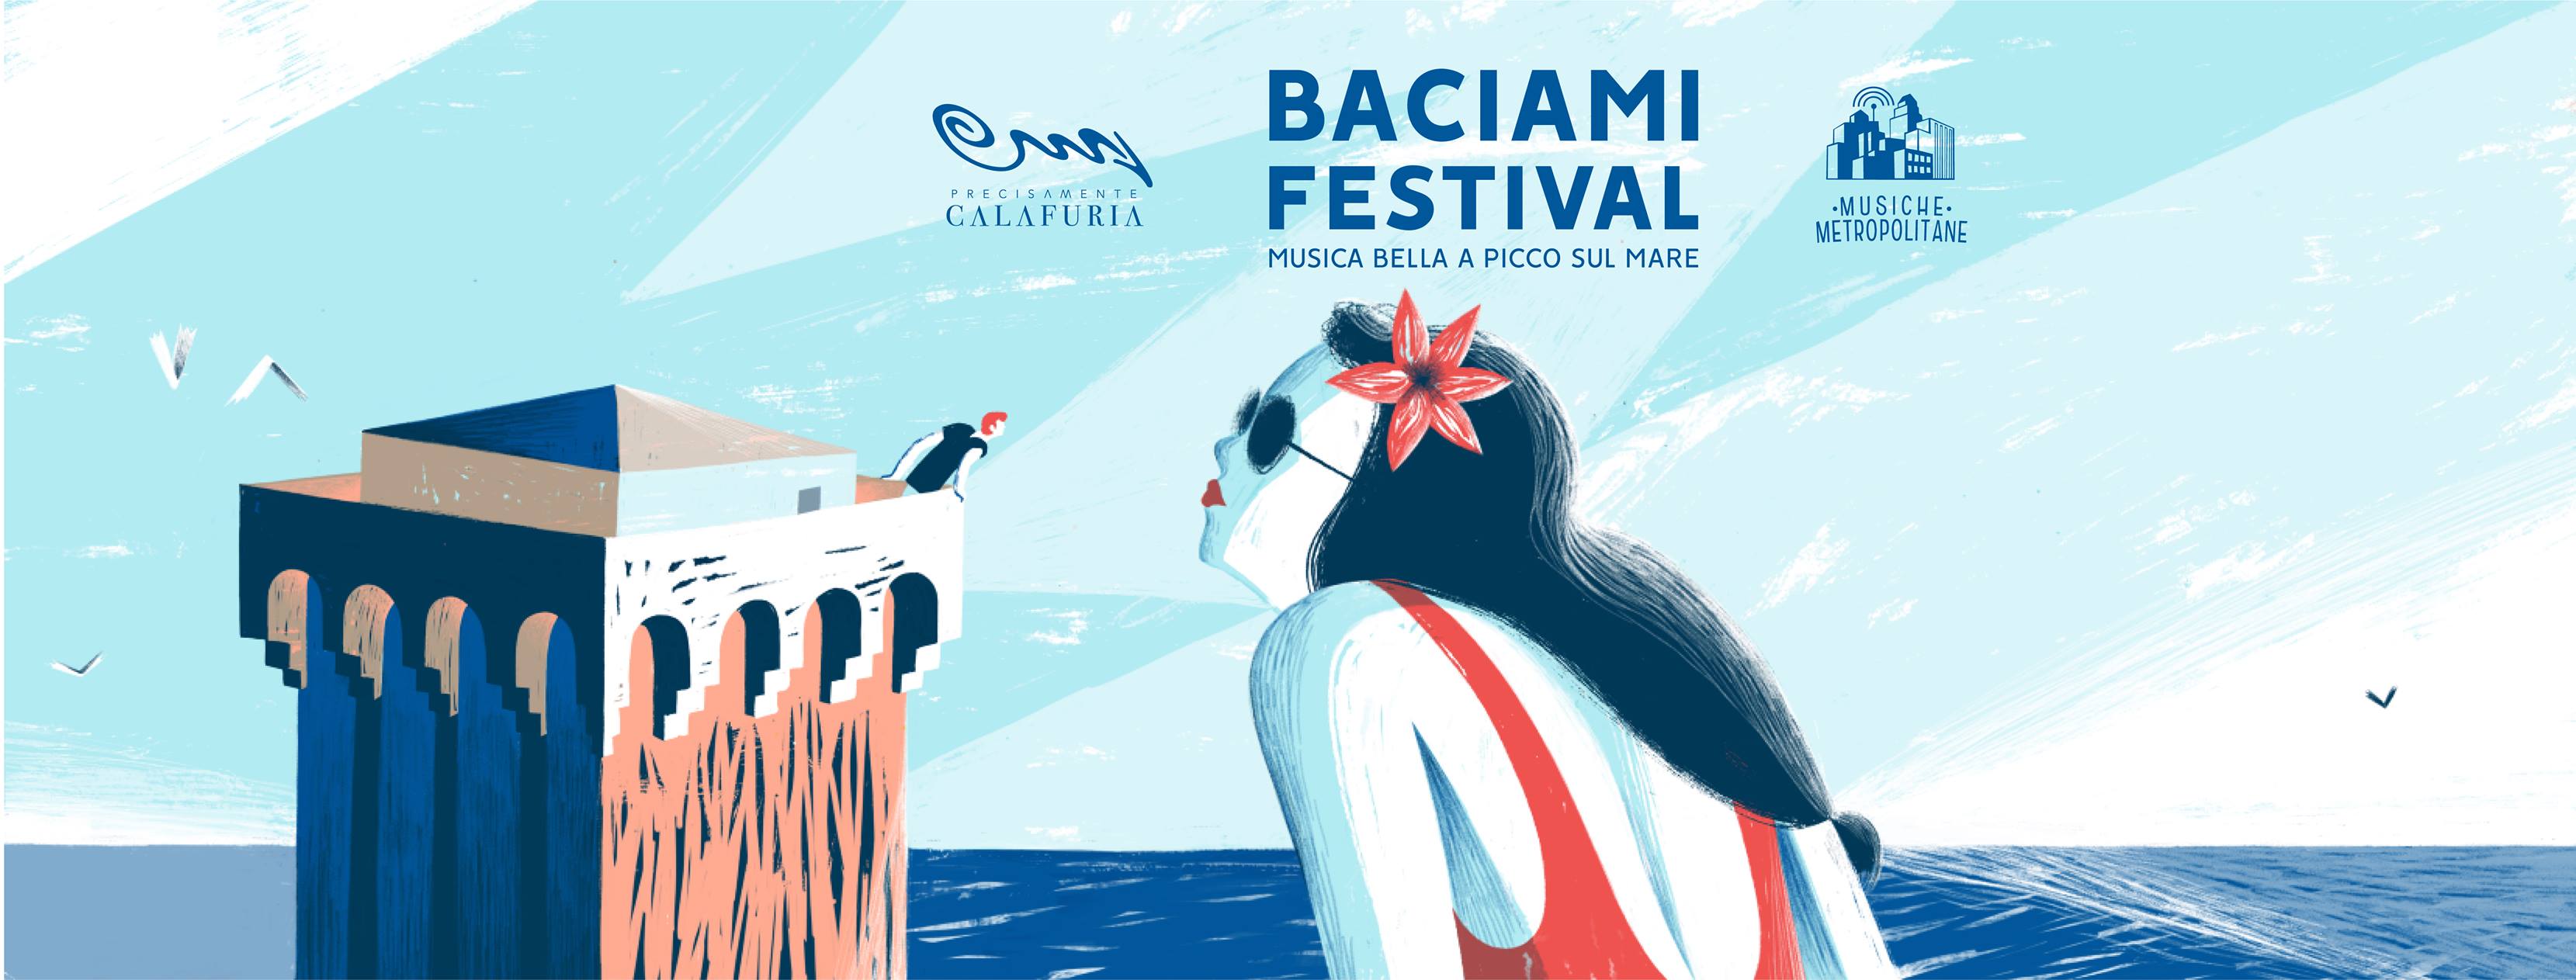 Il Baciami Festival, dal 23 giugno la rassegna estiva di musica italiana, sulla terrazza del locale “Precisamente Calafuria”